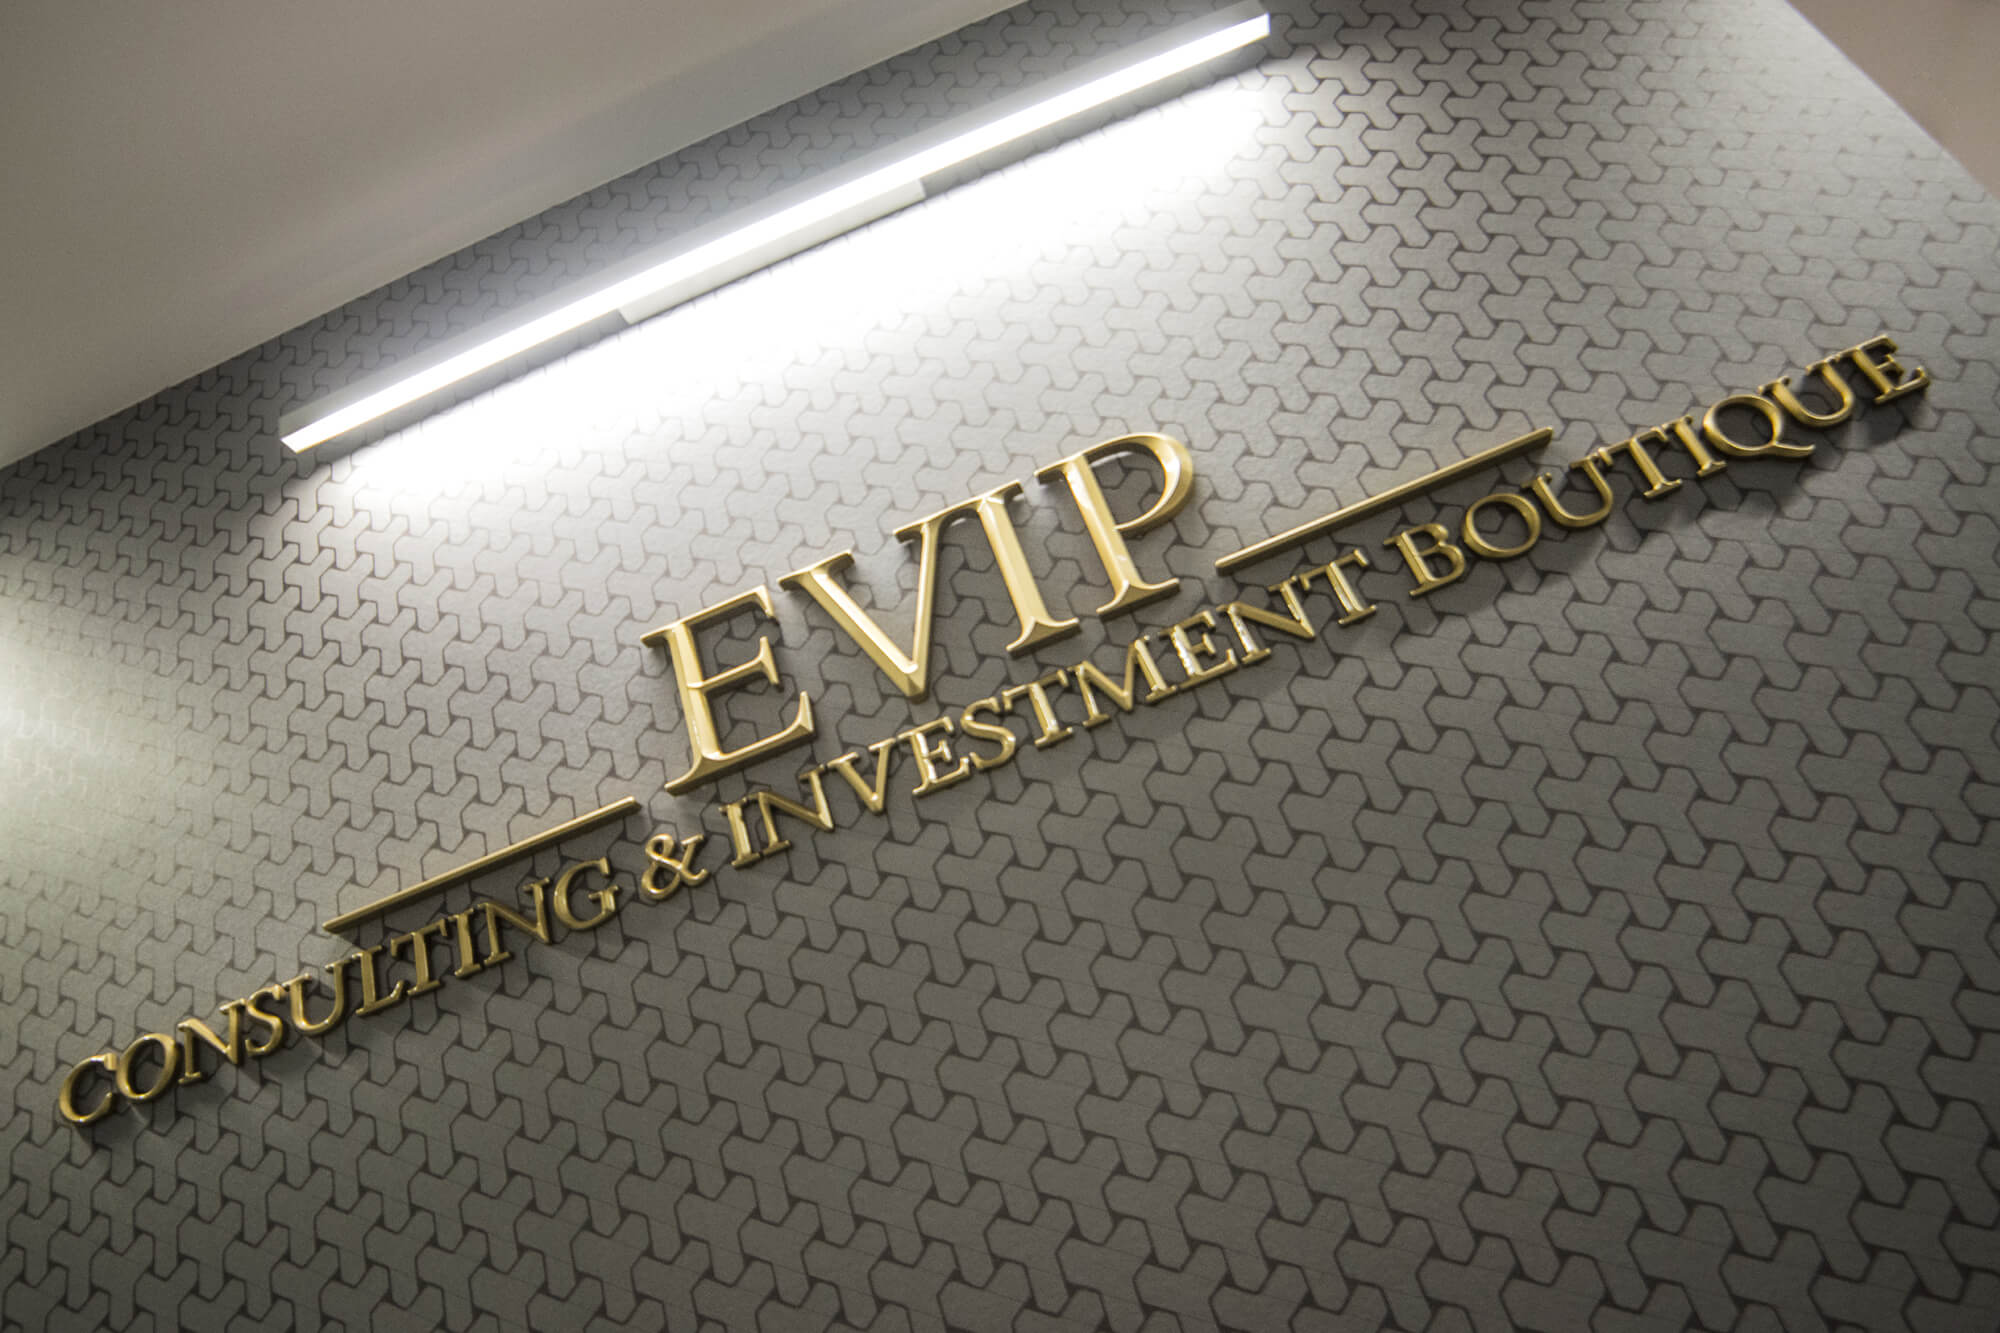 Evip - Prismenbuchstaben - Evip - 3D-Prismenbuchstaben in der Lobby